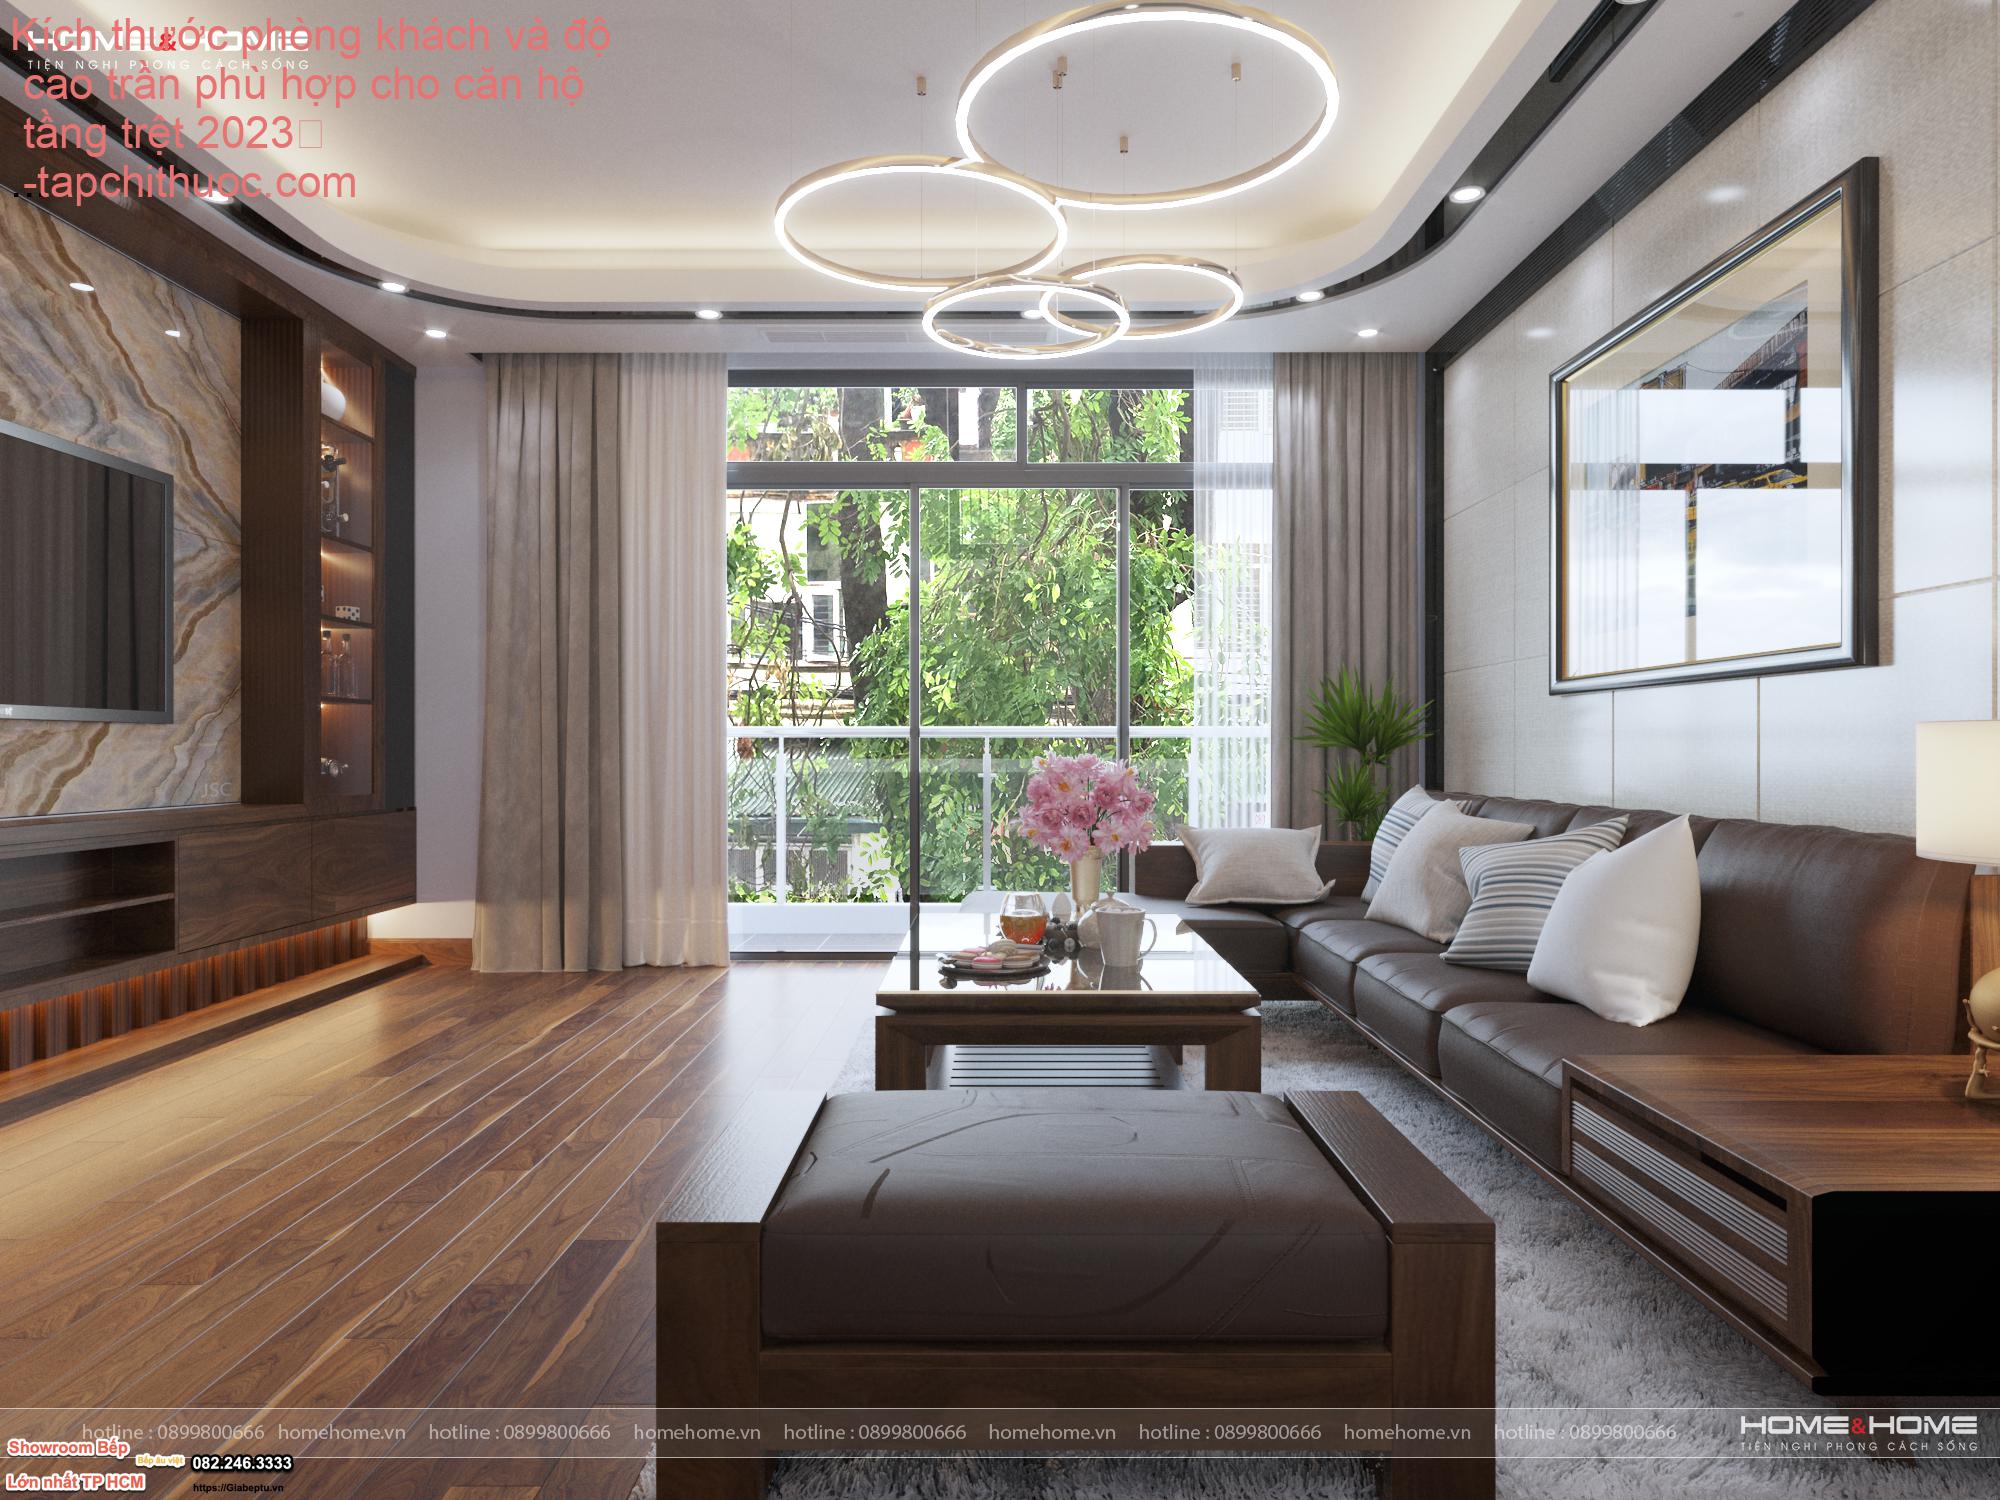 Kích thước phòng khách và độ cao trần phù hợp cho căn hộ tầng trệt 2023
